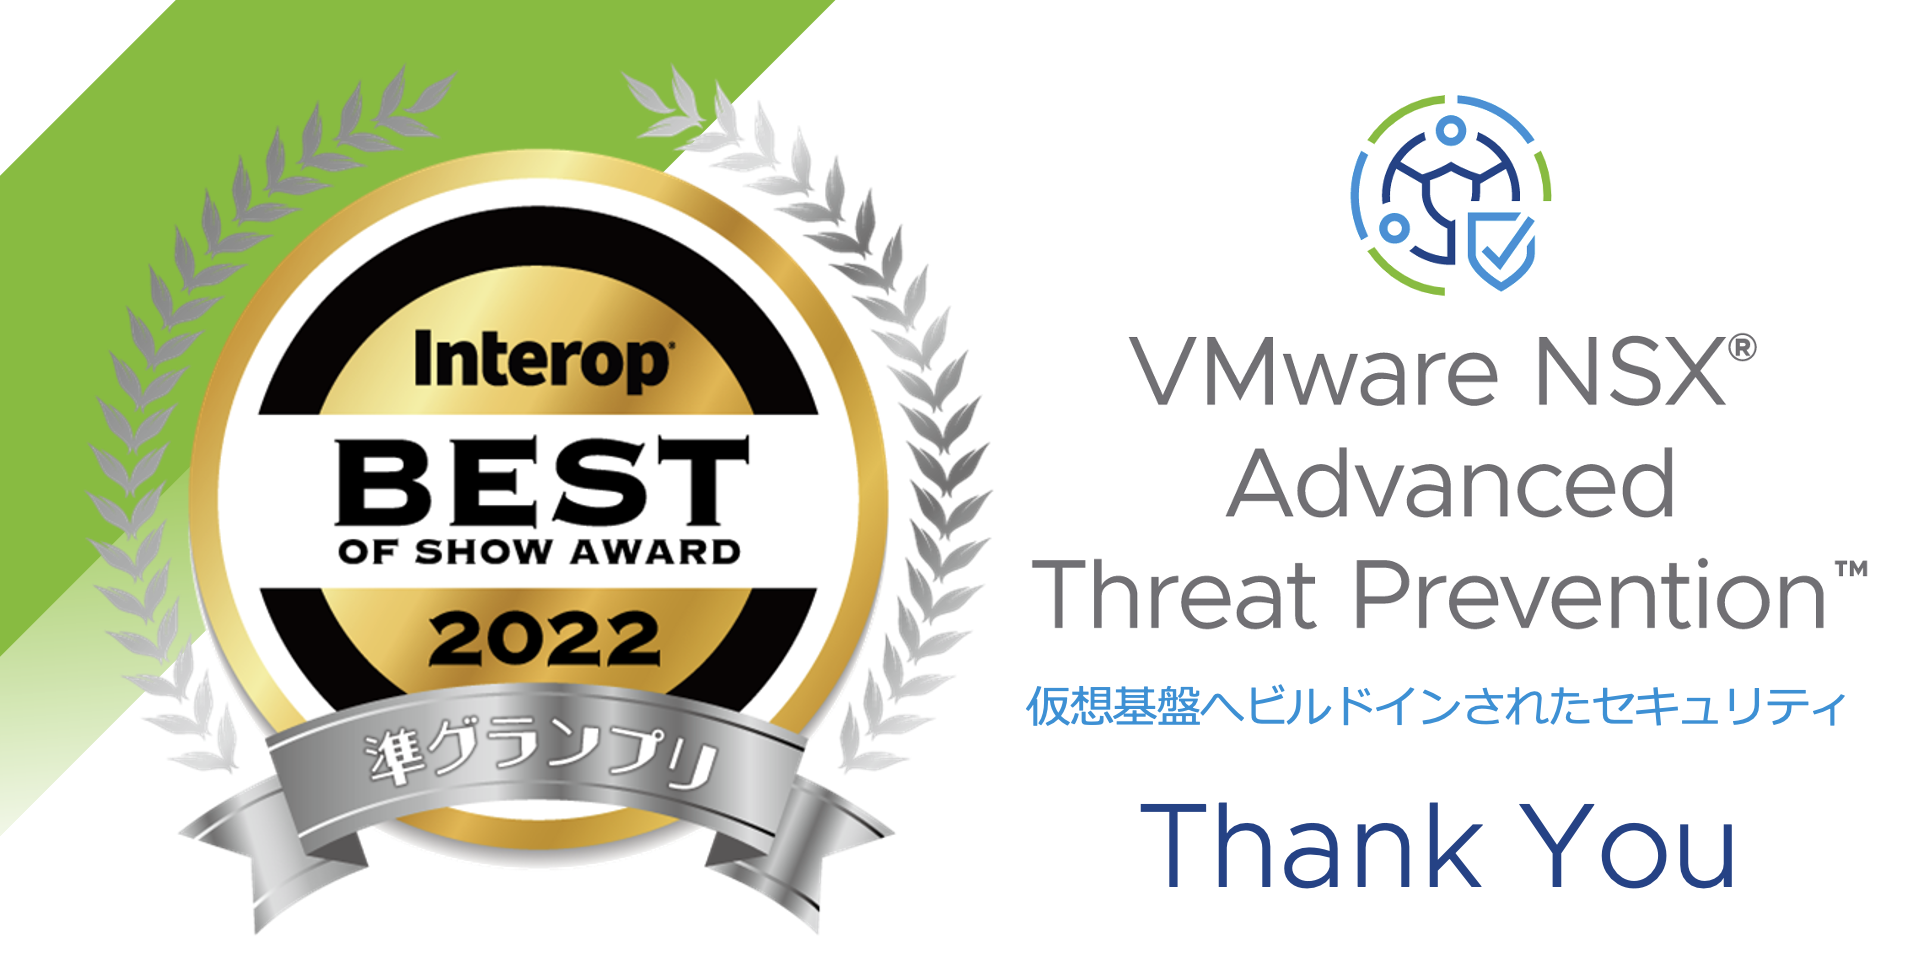 Interop Tokyo 2022「Best of Show Award」で VMware NSX 